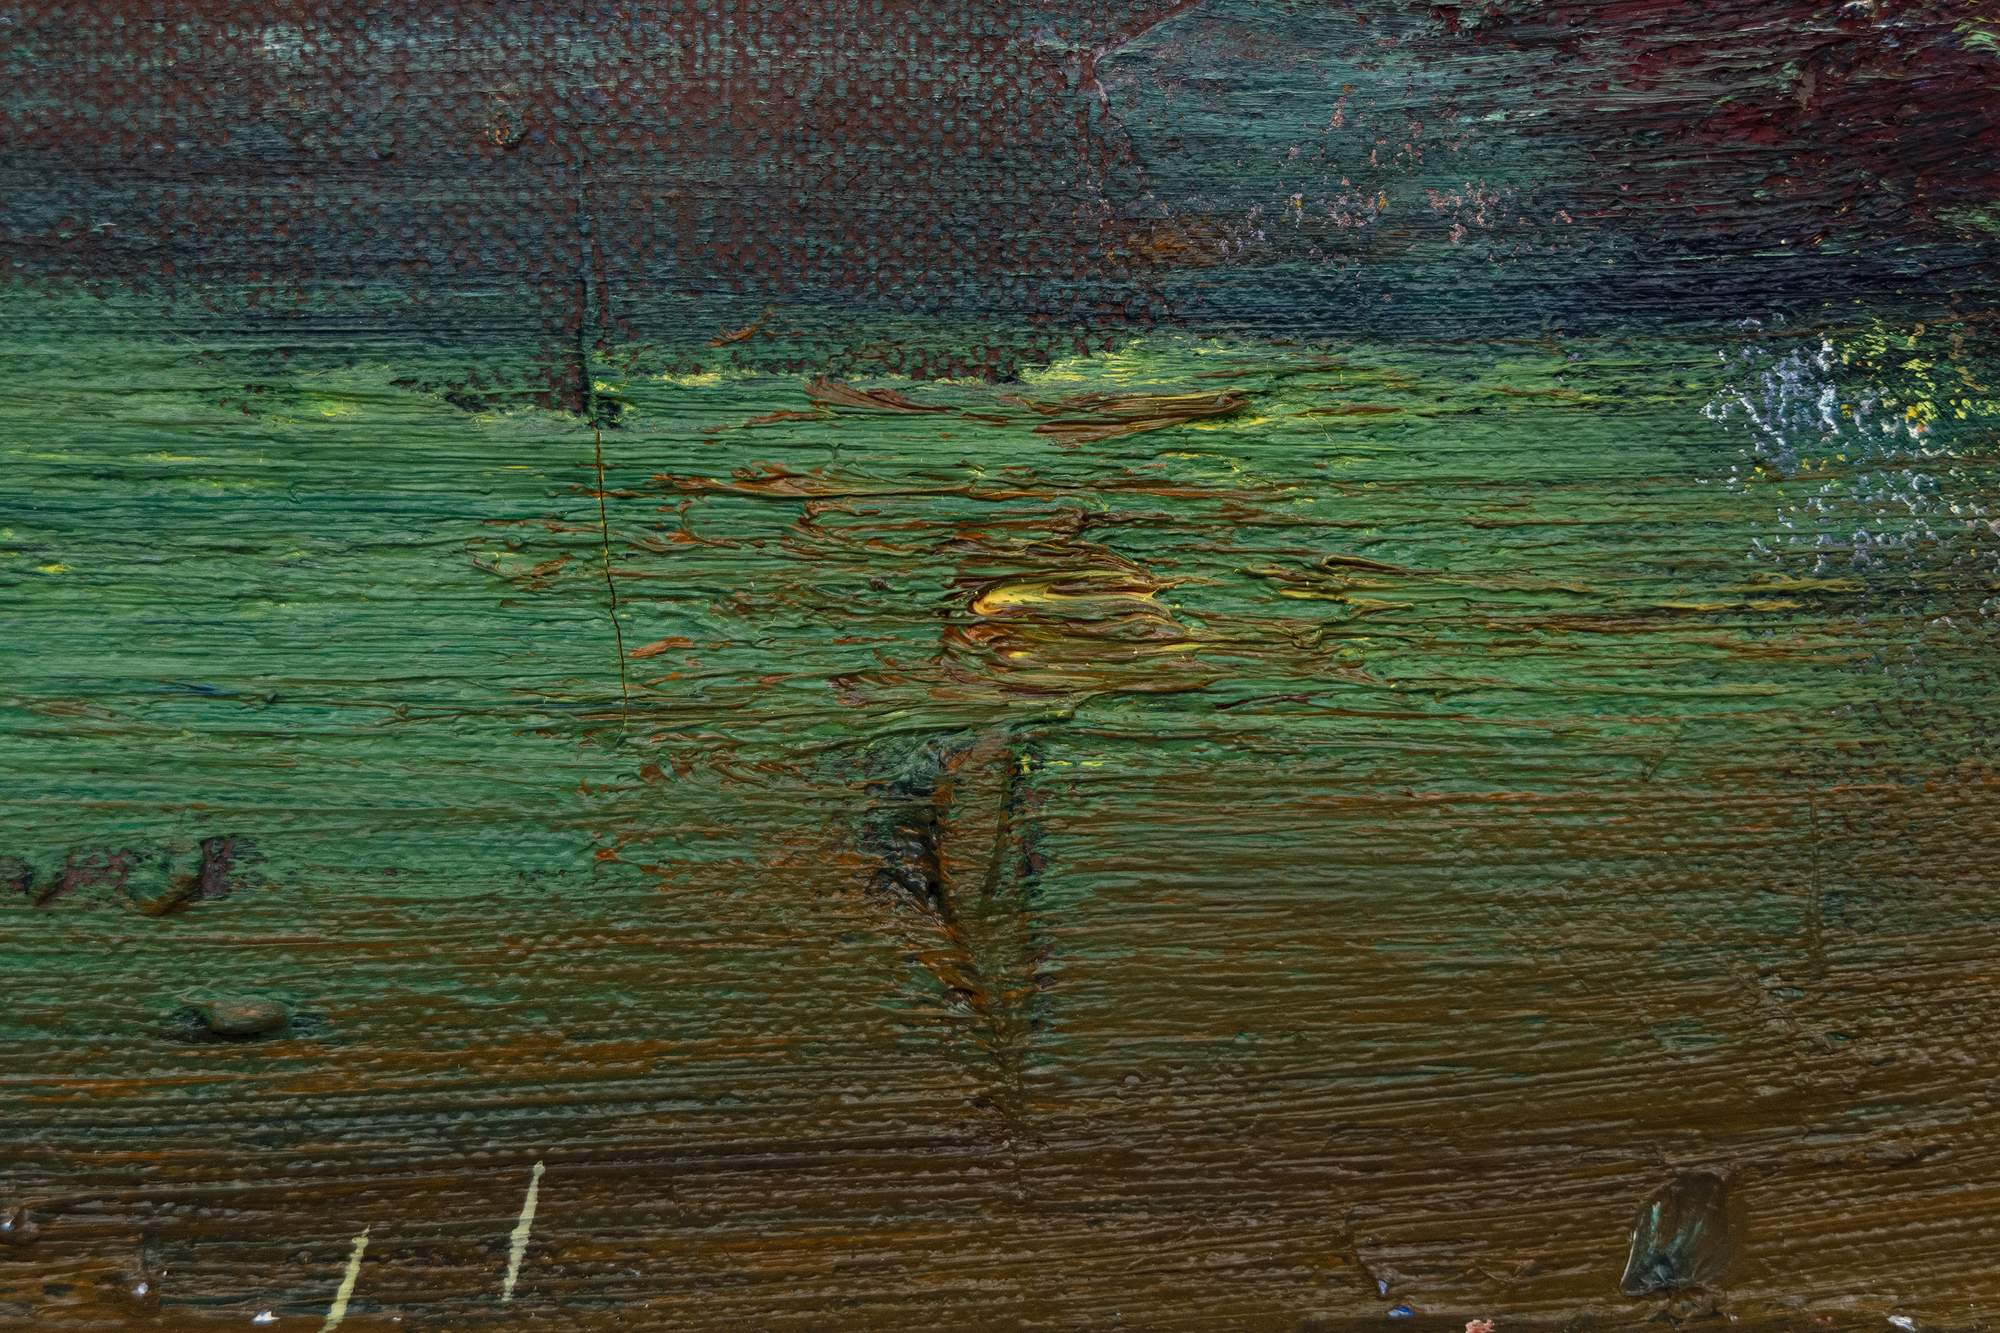 HANS HOFMANN - Sans titre - huile sur toile - 25 x 30 1/4 in.